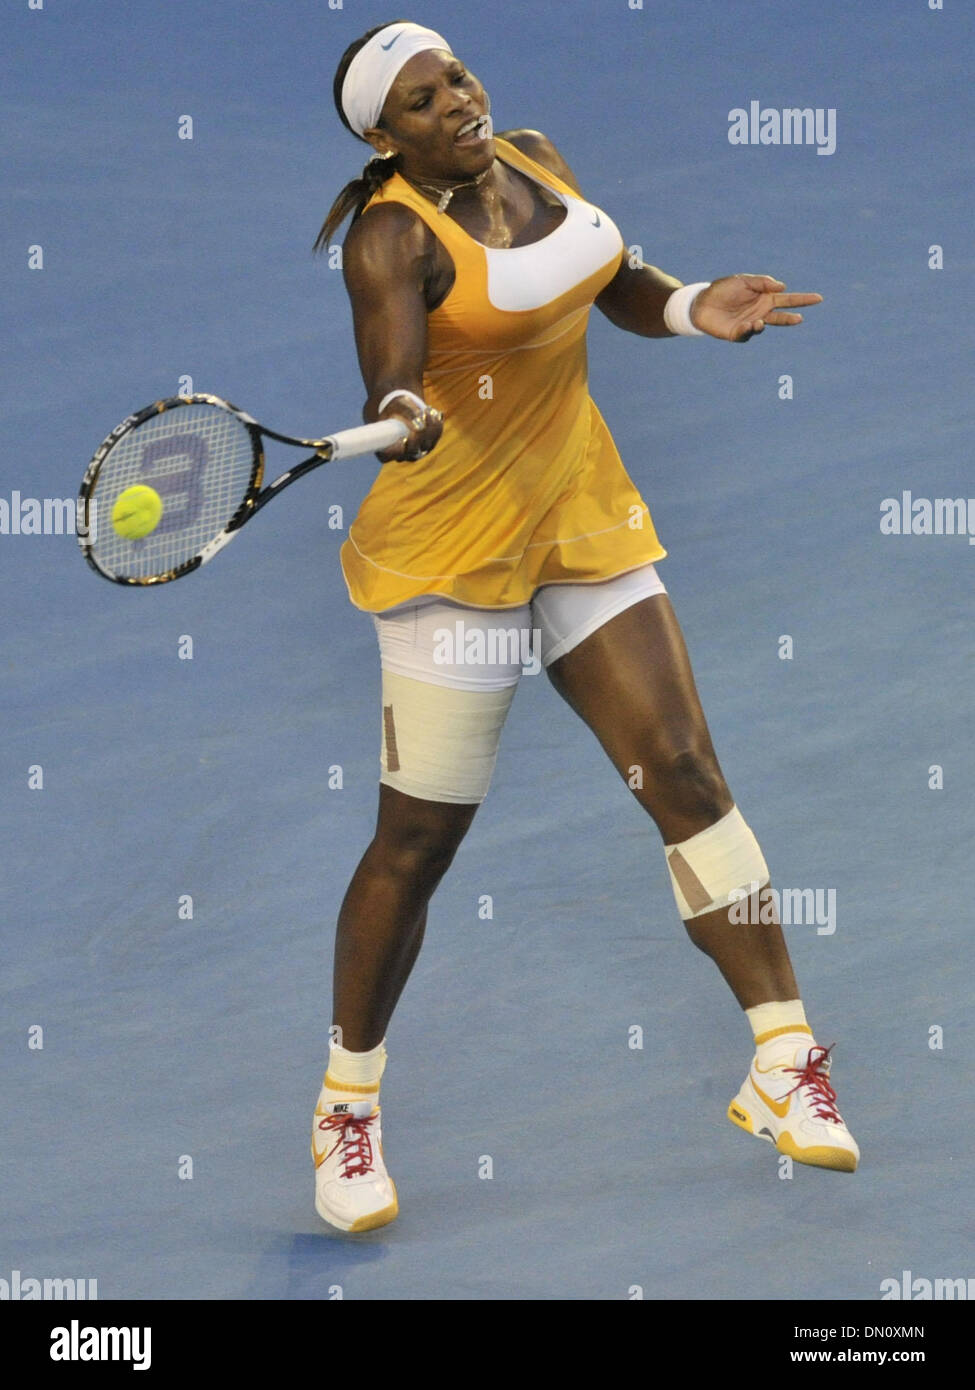 Jan 30, 2010 - Melbourne, Victoria, Australia - SERENA WILLIAMS torna a brave Justine Henin, sconfiggendo Henin in tre set a Rod Laver Arena, estendendo la sua stupefacente record in grand slam finals di 12-3 con un 6-4 3-6 6-2 win. Serena Williams ha richiamato a livello con il suo idolo Billie-Jean re su di tutti i tempi elenco major. (Credito Immagine: © Matthew Mallett/ZUMA Press) Foto Stock